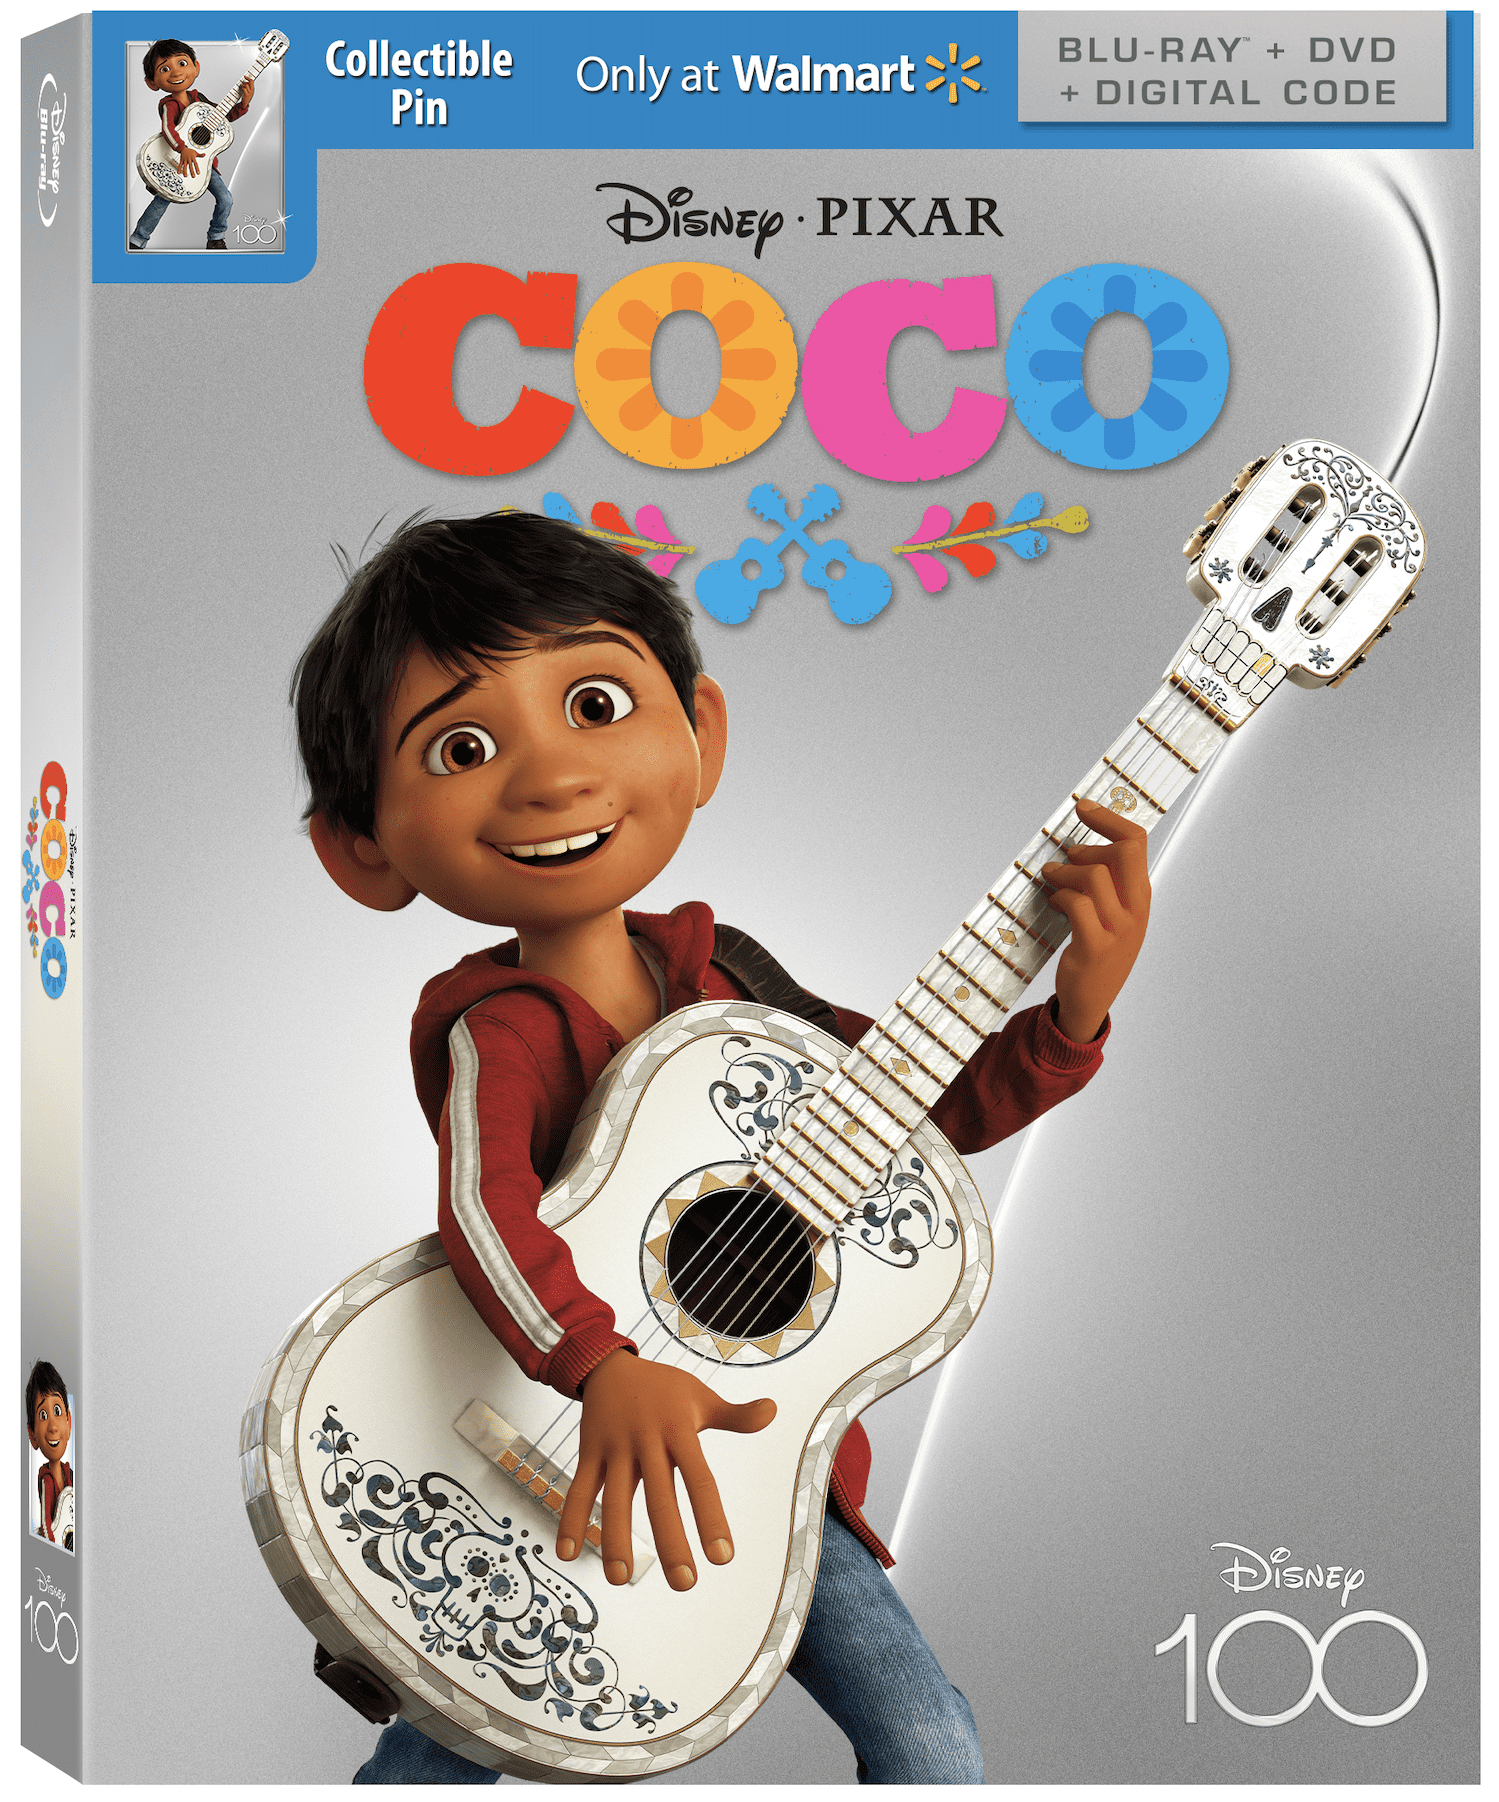 Coco - Disney100 Edition Walmart Exclusive (Blu-ray + DVD + Digital Code) 